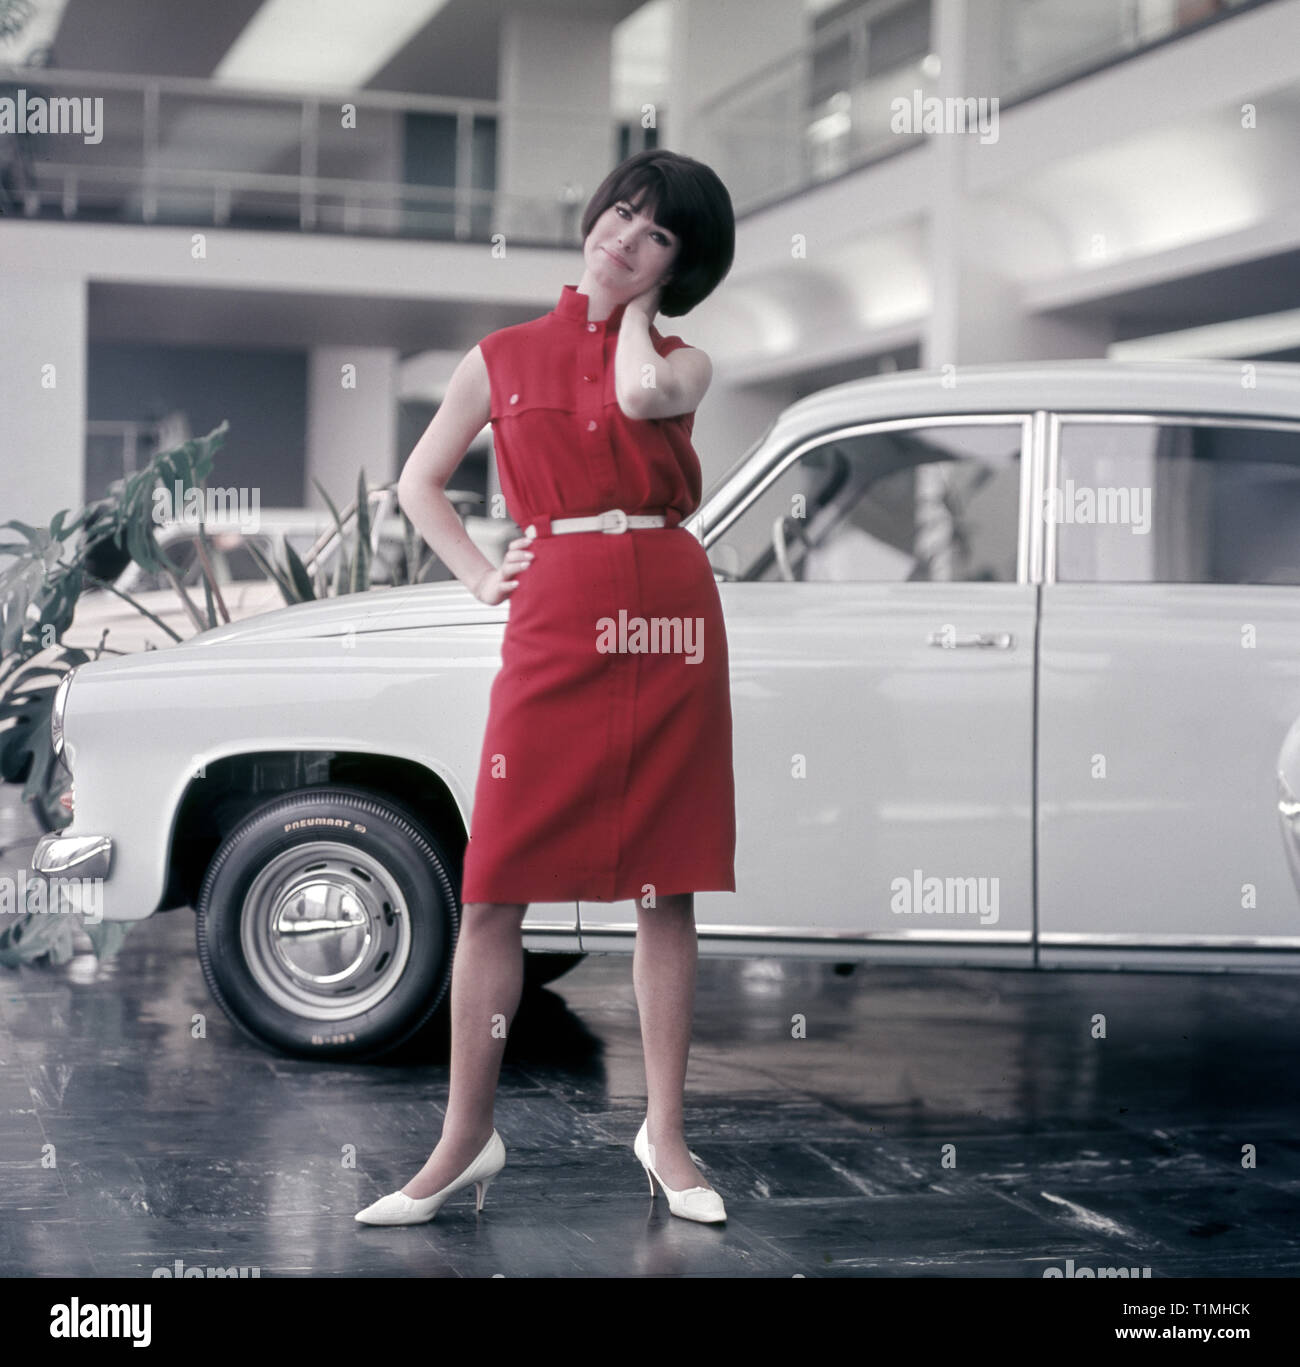 20.01.1971, Berlin, Berlin, REPUBBLICA DEMOCRATICA TEDESCA - Modello mostra l'ultima moda per donna di fronte a una Trabant P50. 00S710120A319CAROEX.JPG [modello di rilascio: NO, corretto Foto Stock